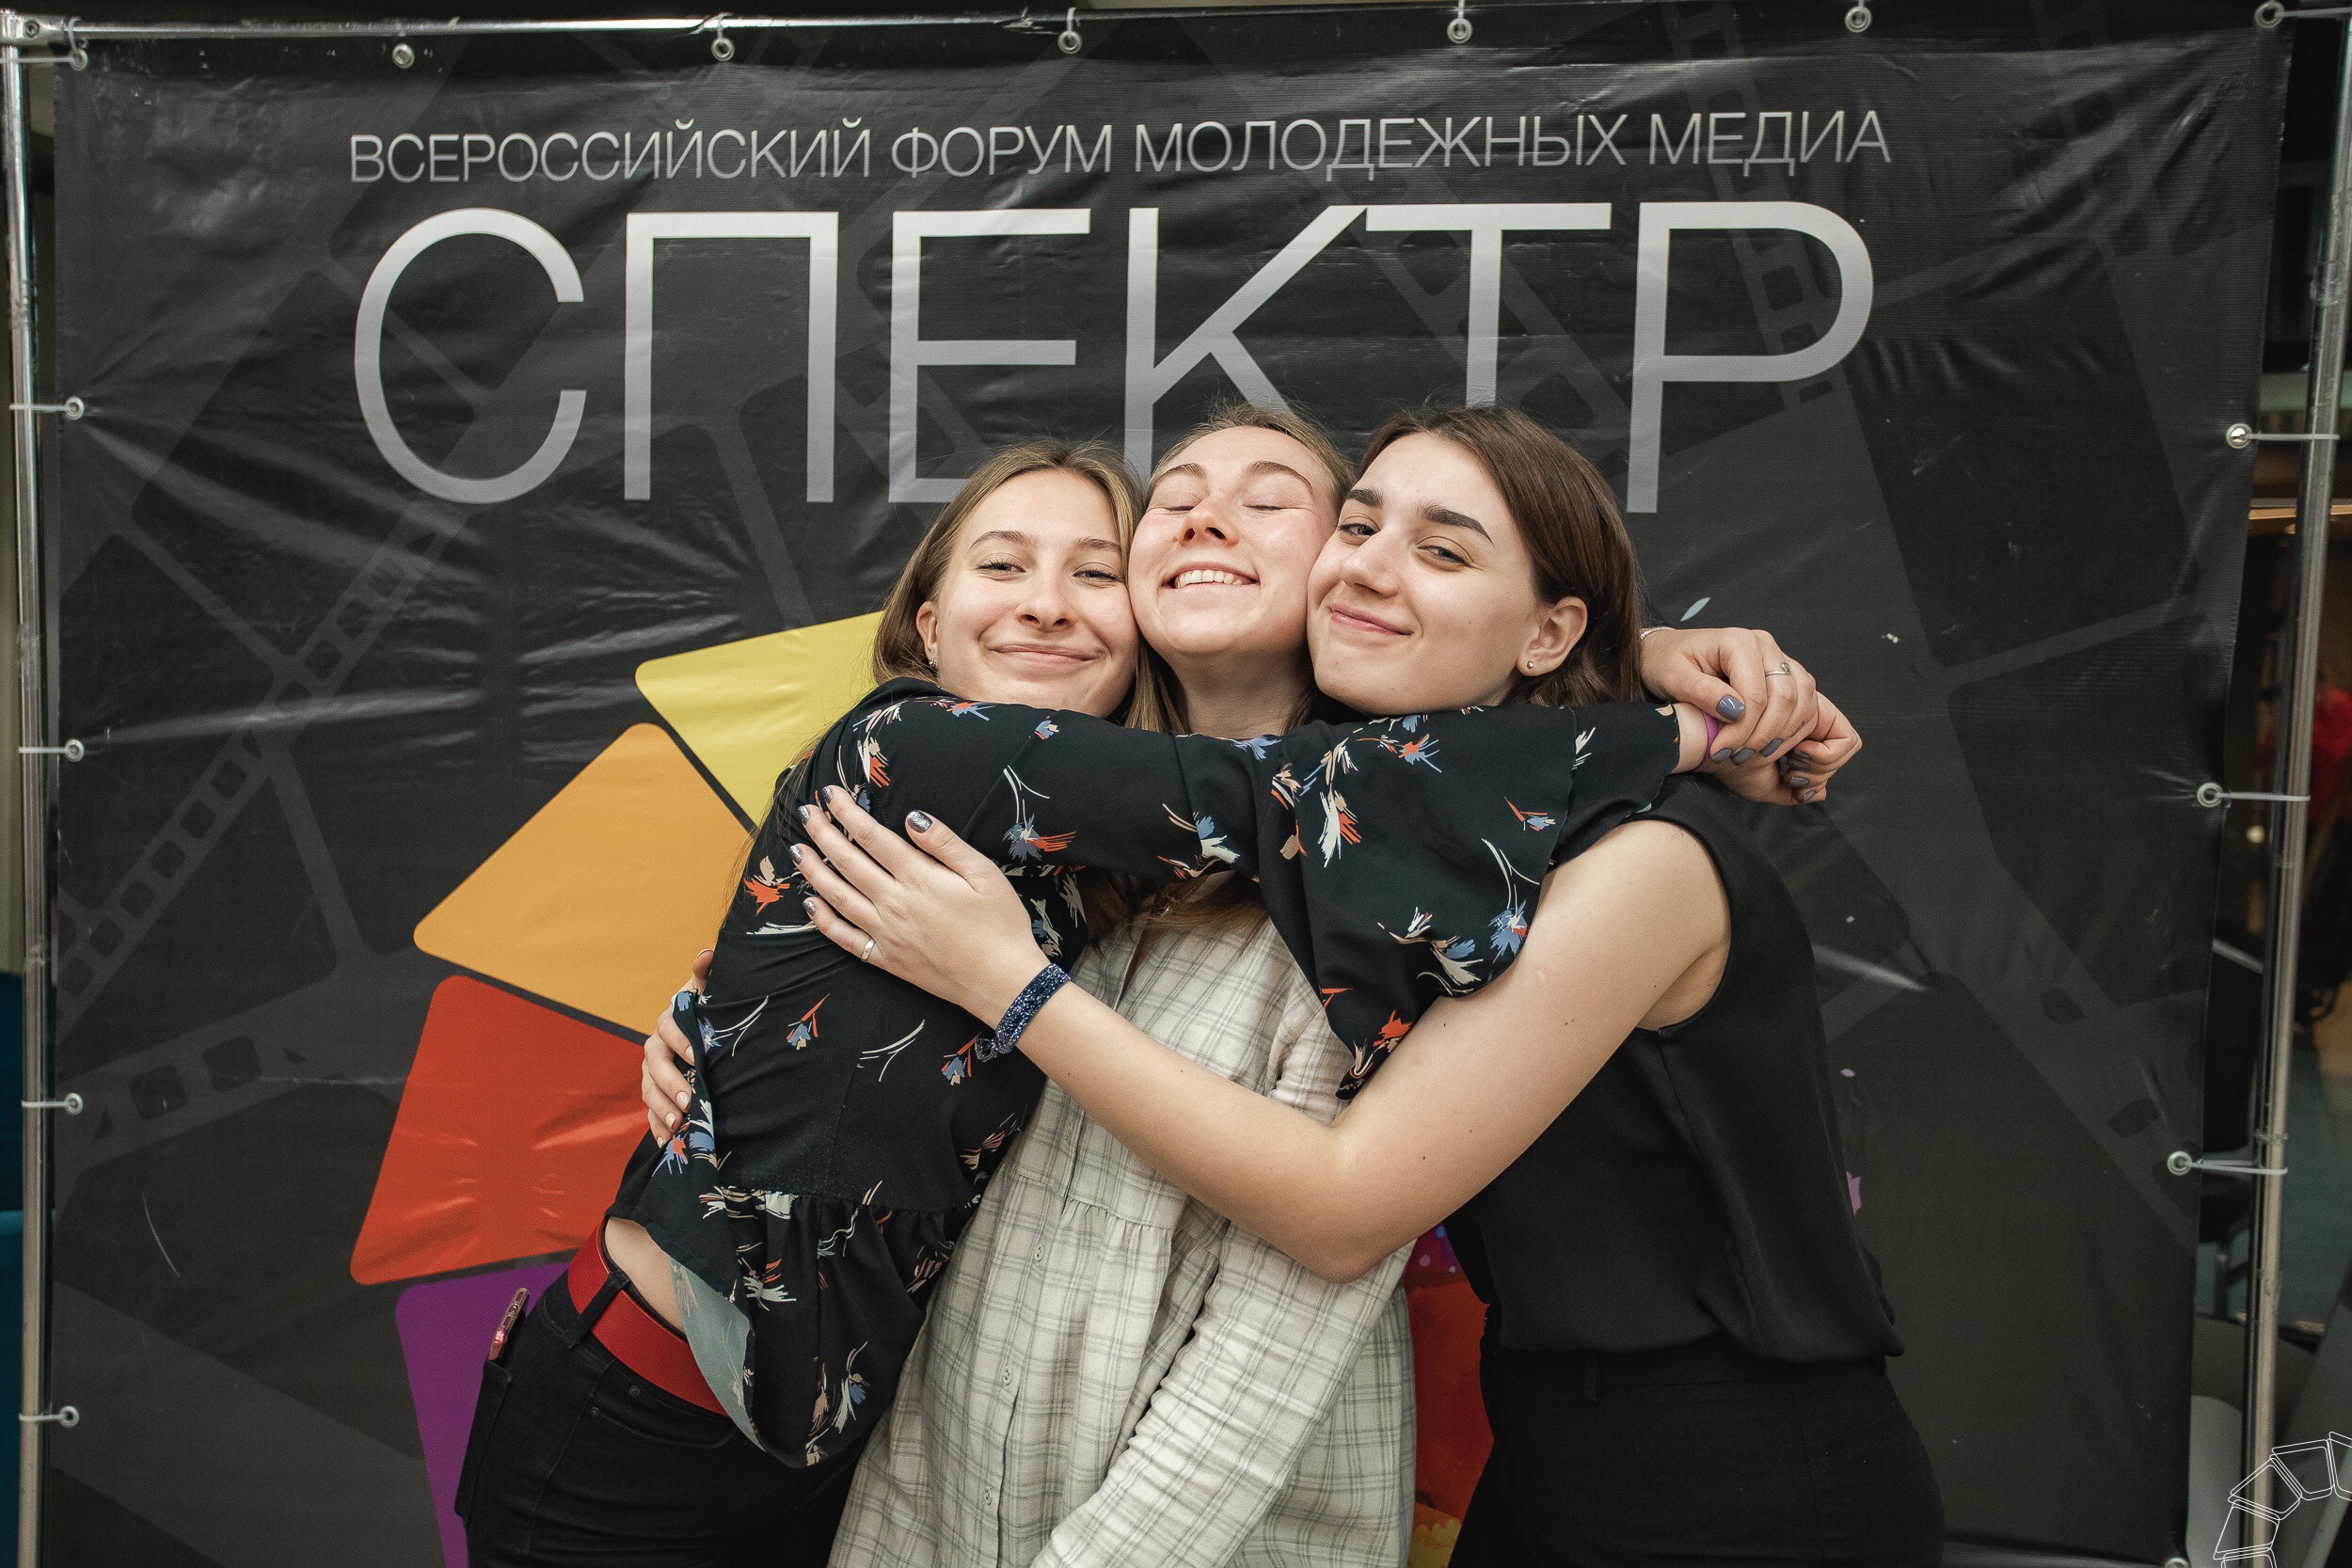 Студенческий журнал КузГТУ «Своя марка» стал призером Всероссийского форума молодежных медиа «СПЕКТР»